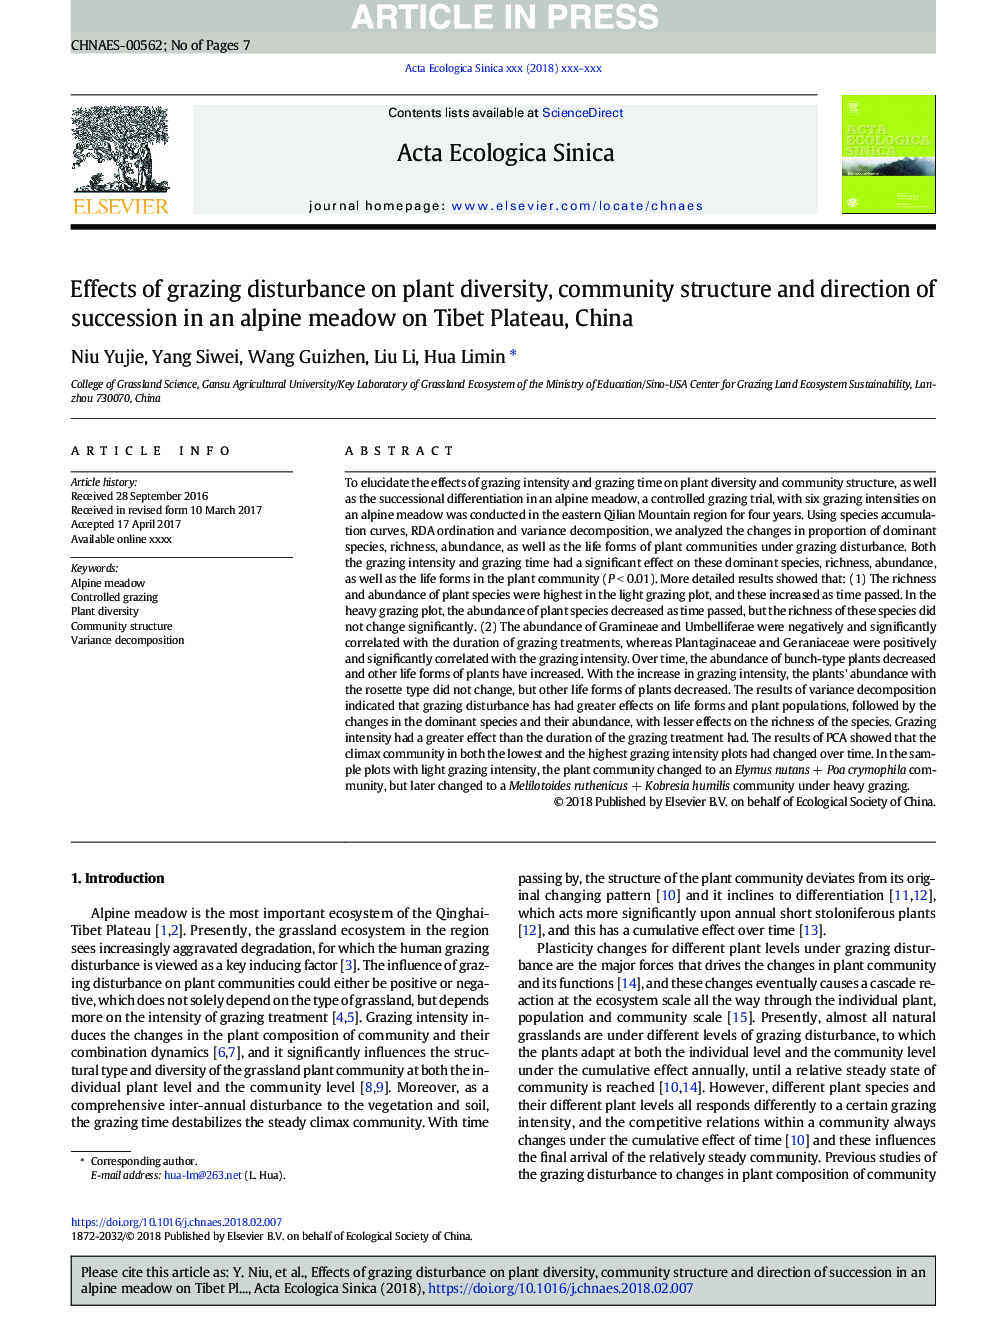 تأثیر اختلالات چرا در تنوع گیاه، ساختار اجتماعی و جهت جانشینی در چمنزارهای آلپ در پلاتو تبت، چین 